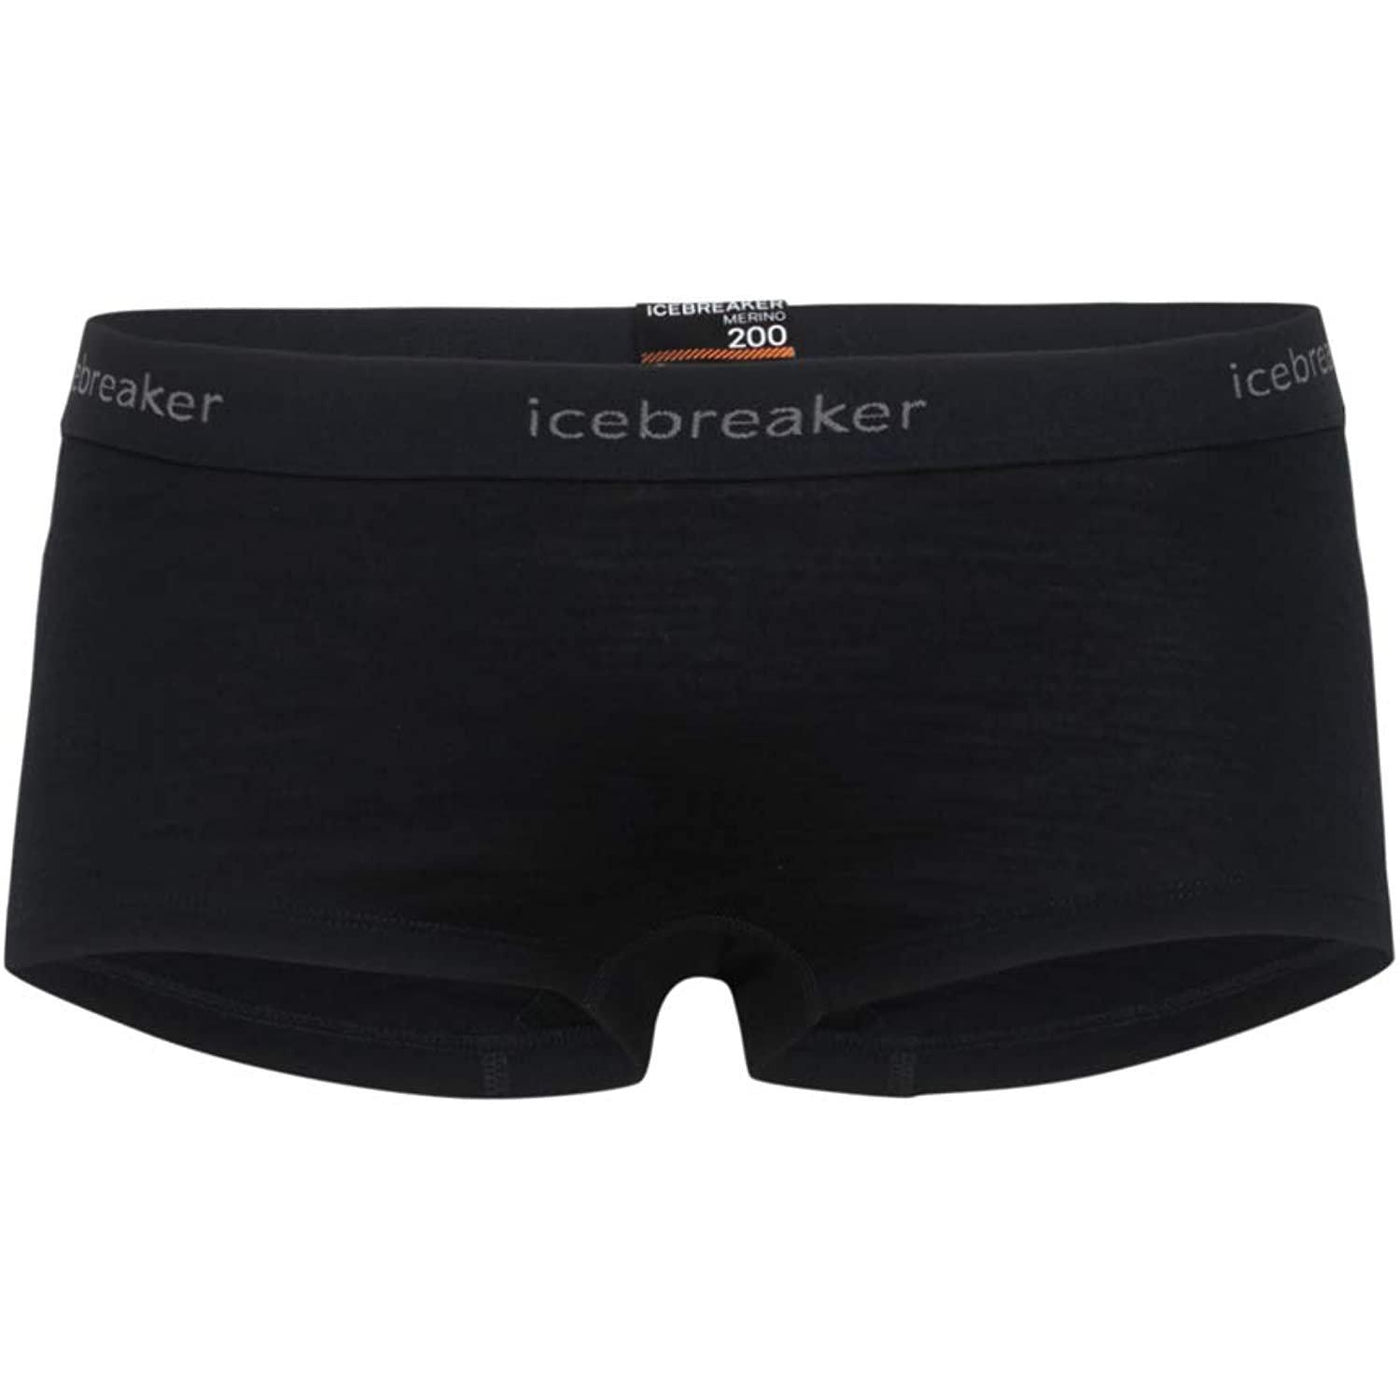 Icebreaker Merino Women's Oasis Boy Shorts Underwear, Merino Wool –